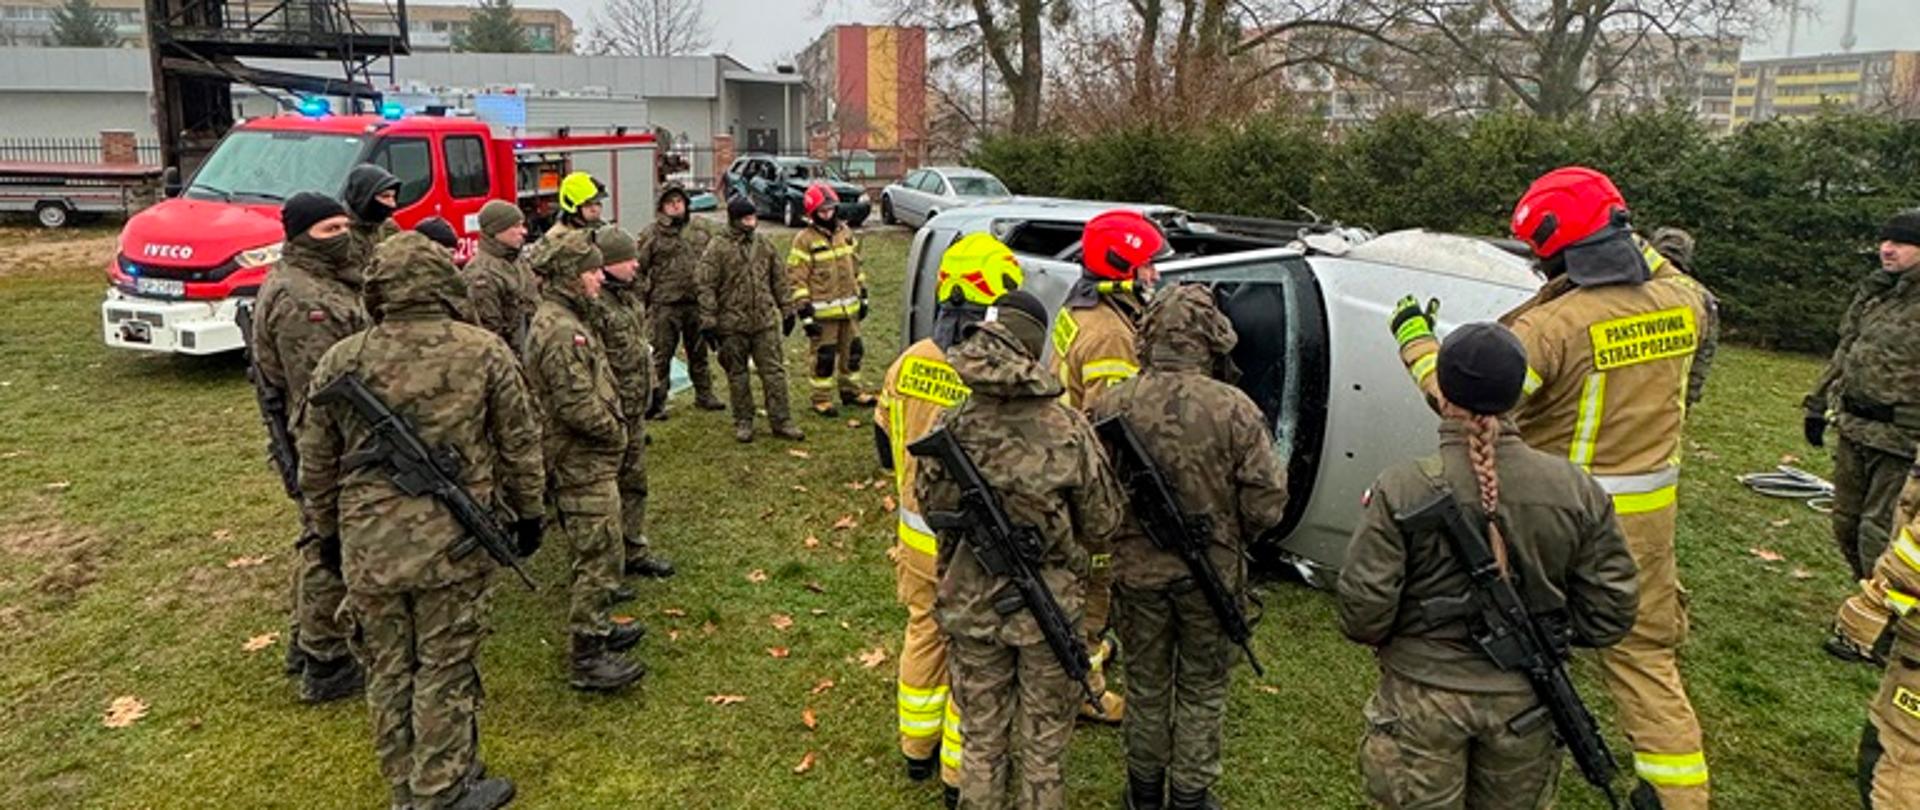 Żołnierze stoją w trakcie szkolenia a w tle przewrócone na bok samochody osobowe, przy których pracują strażacy